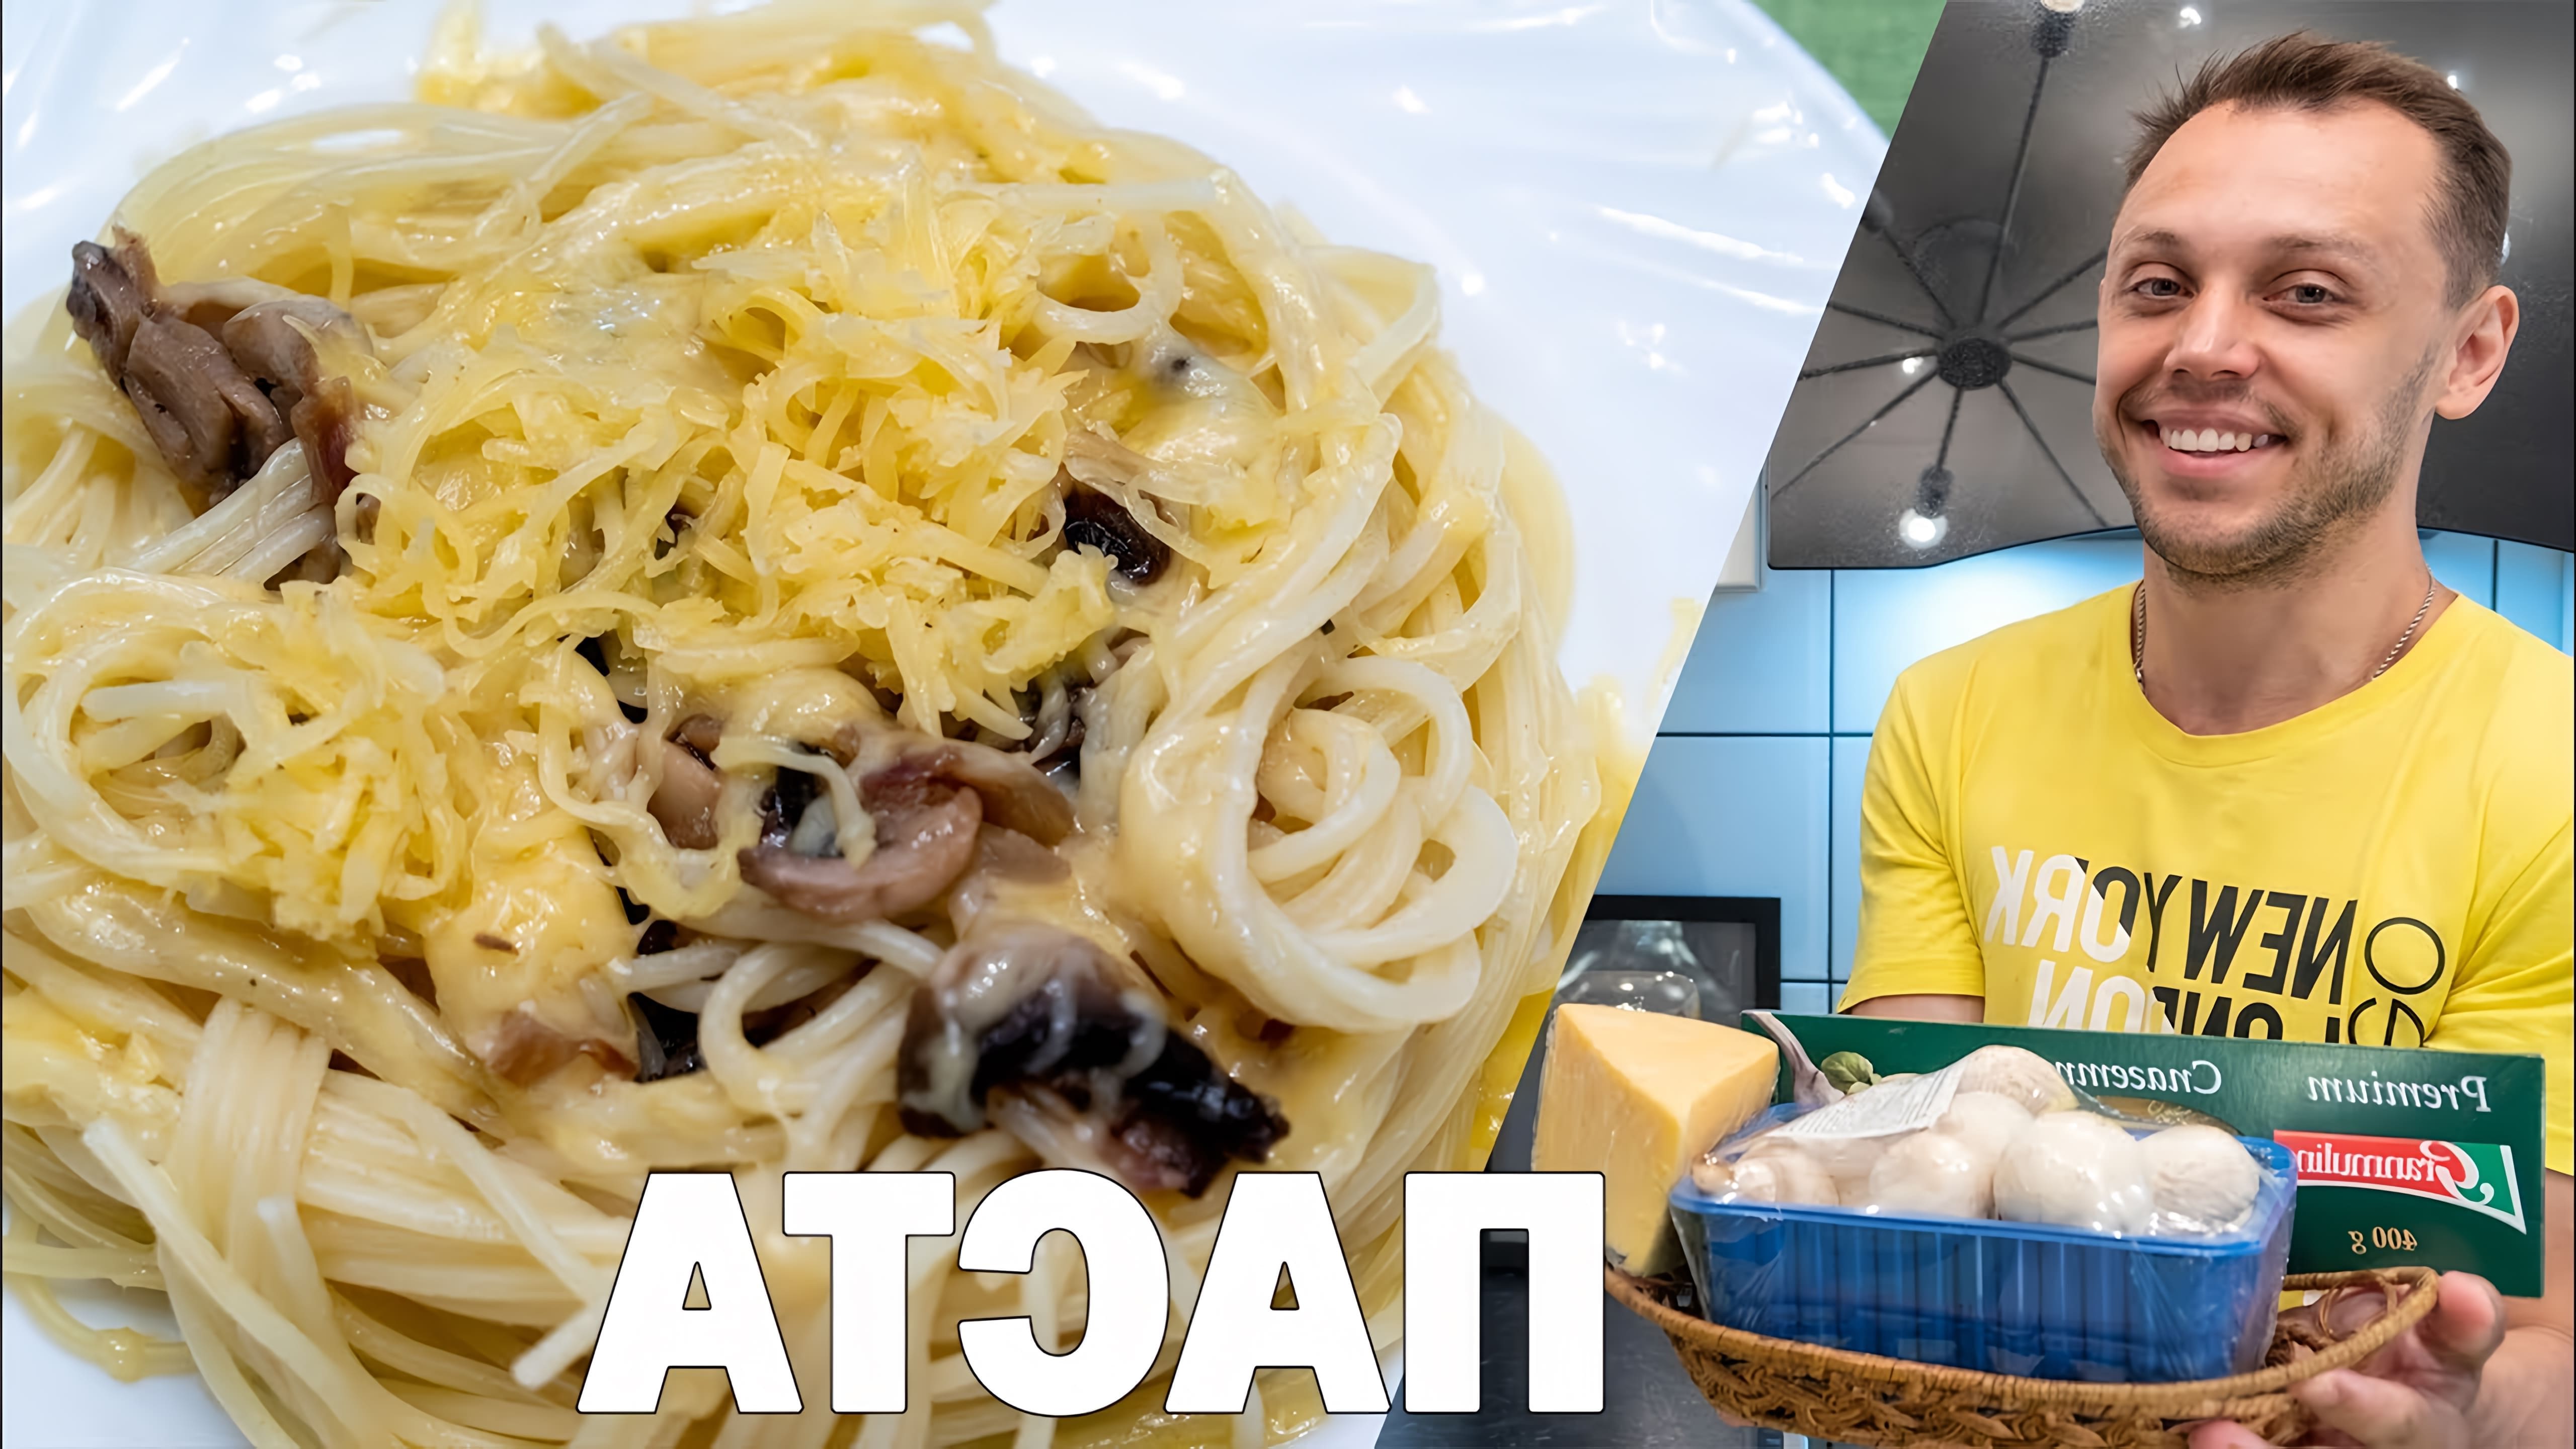 В этом видео демонстрируется процесс приготовления пасты с грибами аль денте, одного из самых популярных итальянских блюд